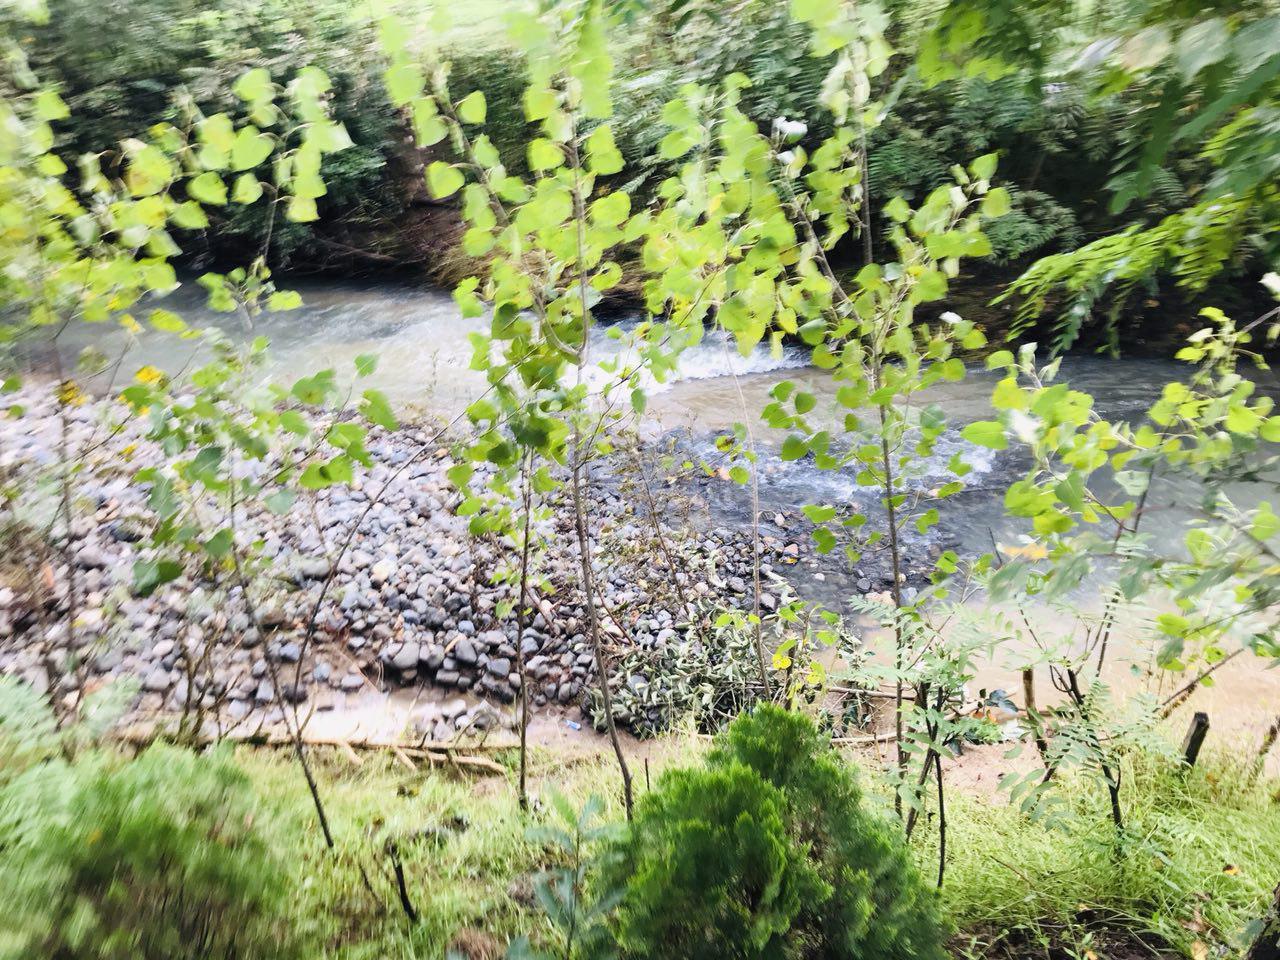 اقامتگاه بومگردی در فومن جنگلی در کنار رودخانه